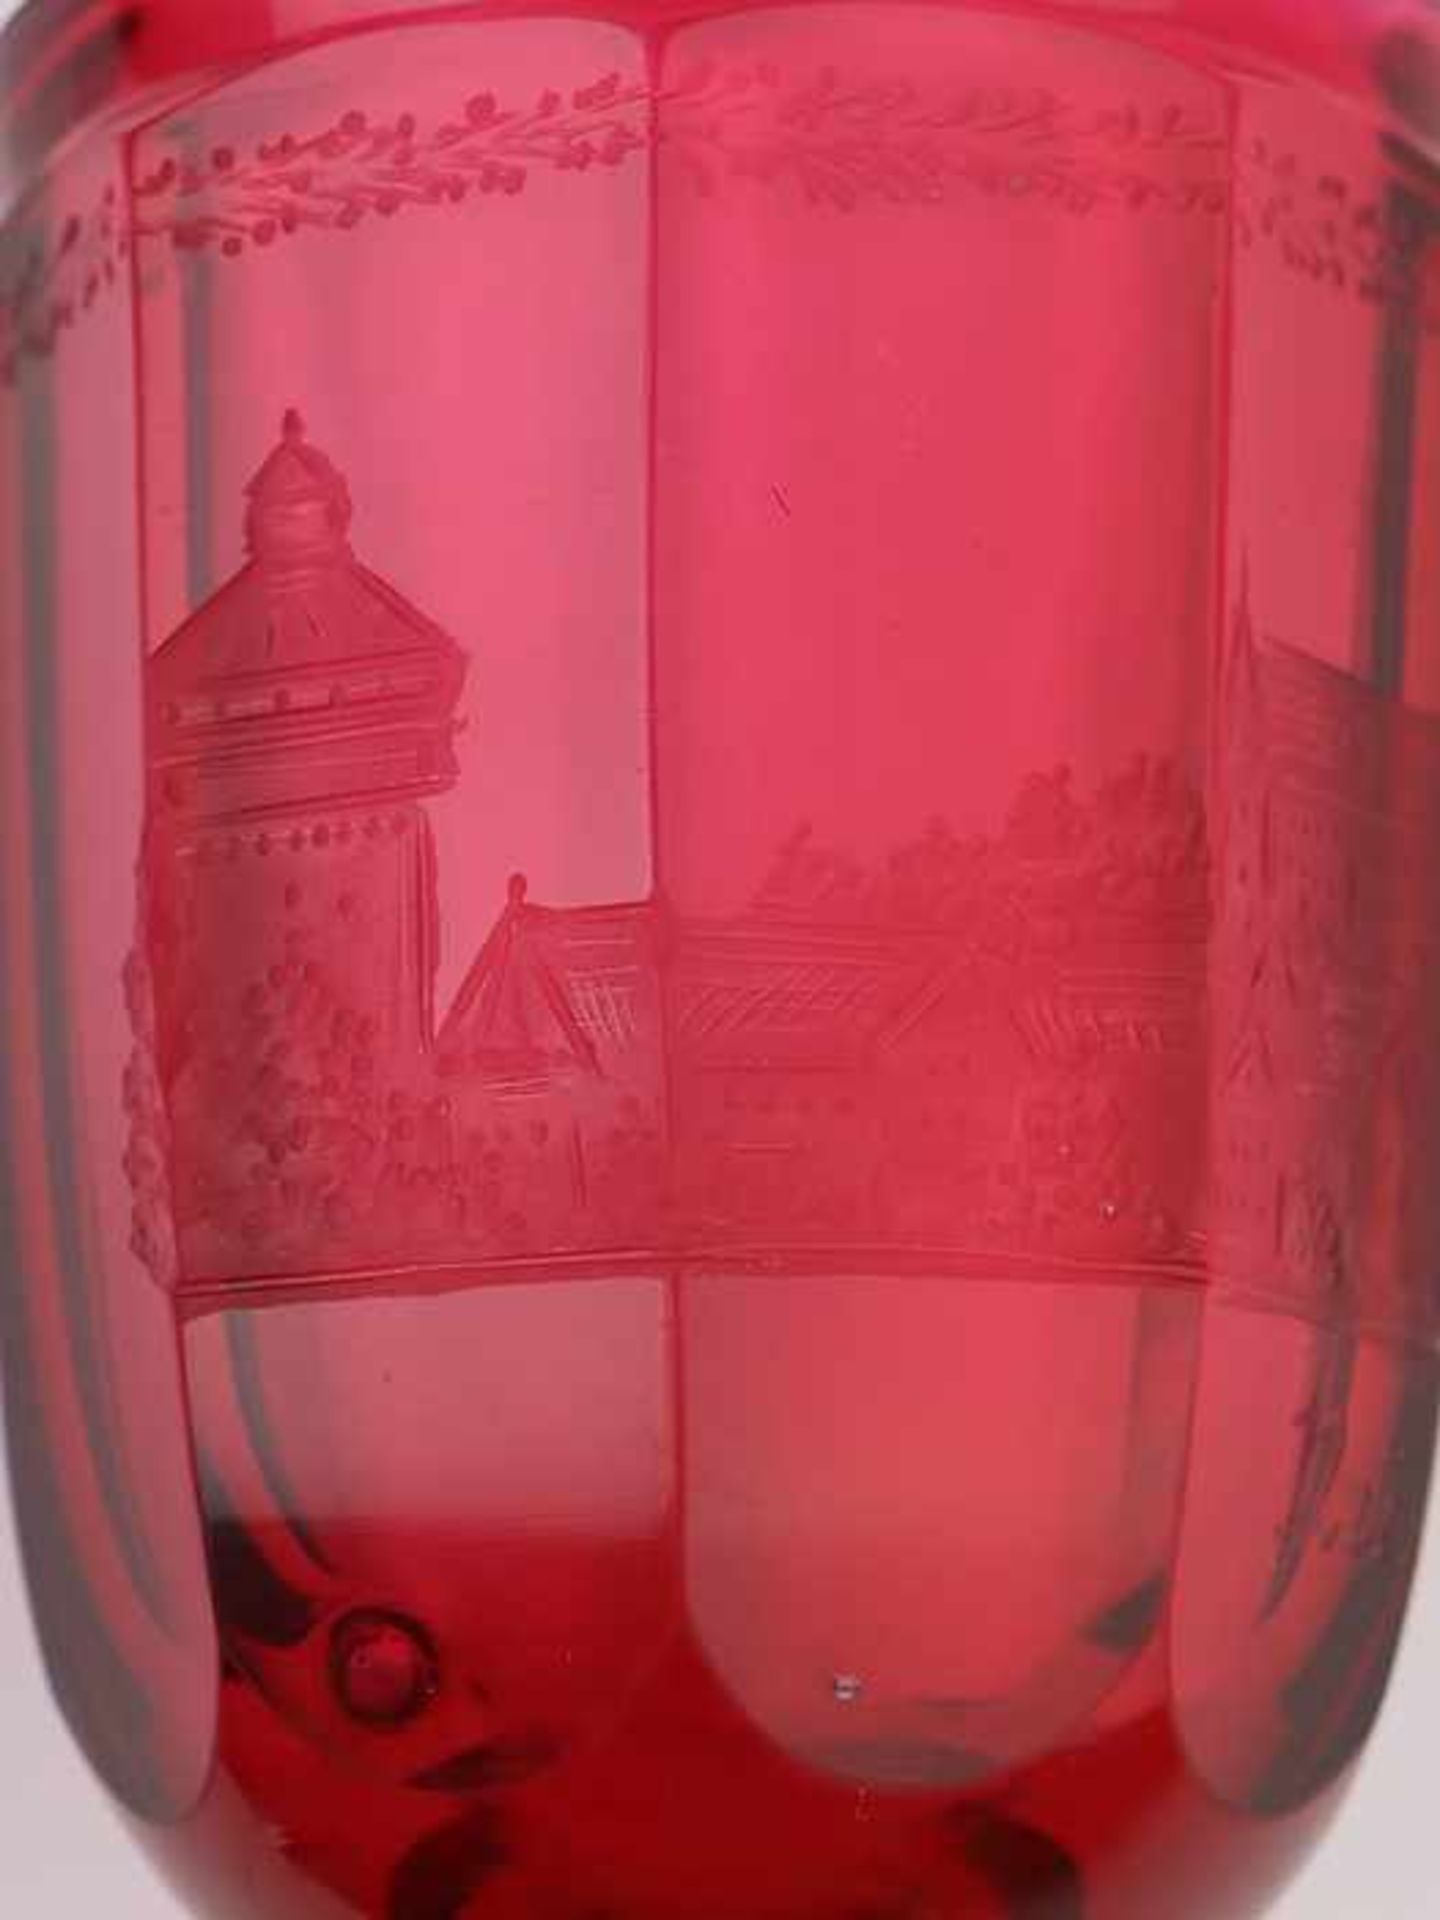 Andenkenbecher19. Jh., farbloses u. rubinfarbenes Glas, runder, zweifach gewulsteter Stand, konkaver - Bild 6 aus 8